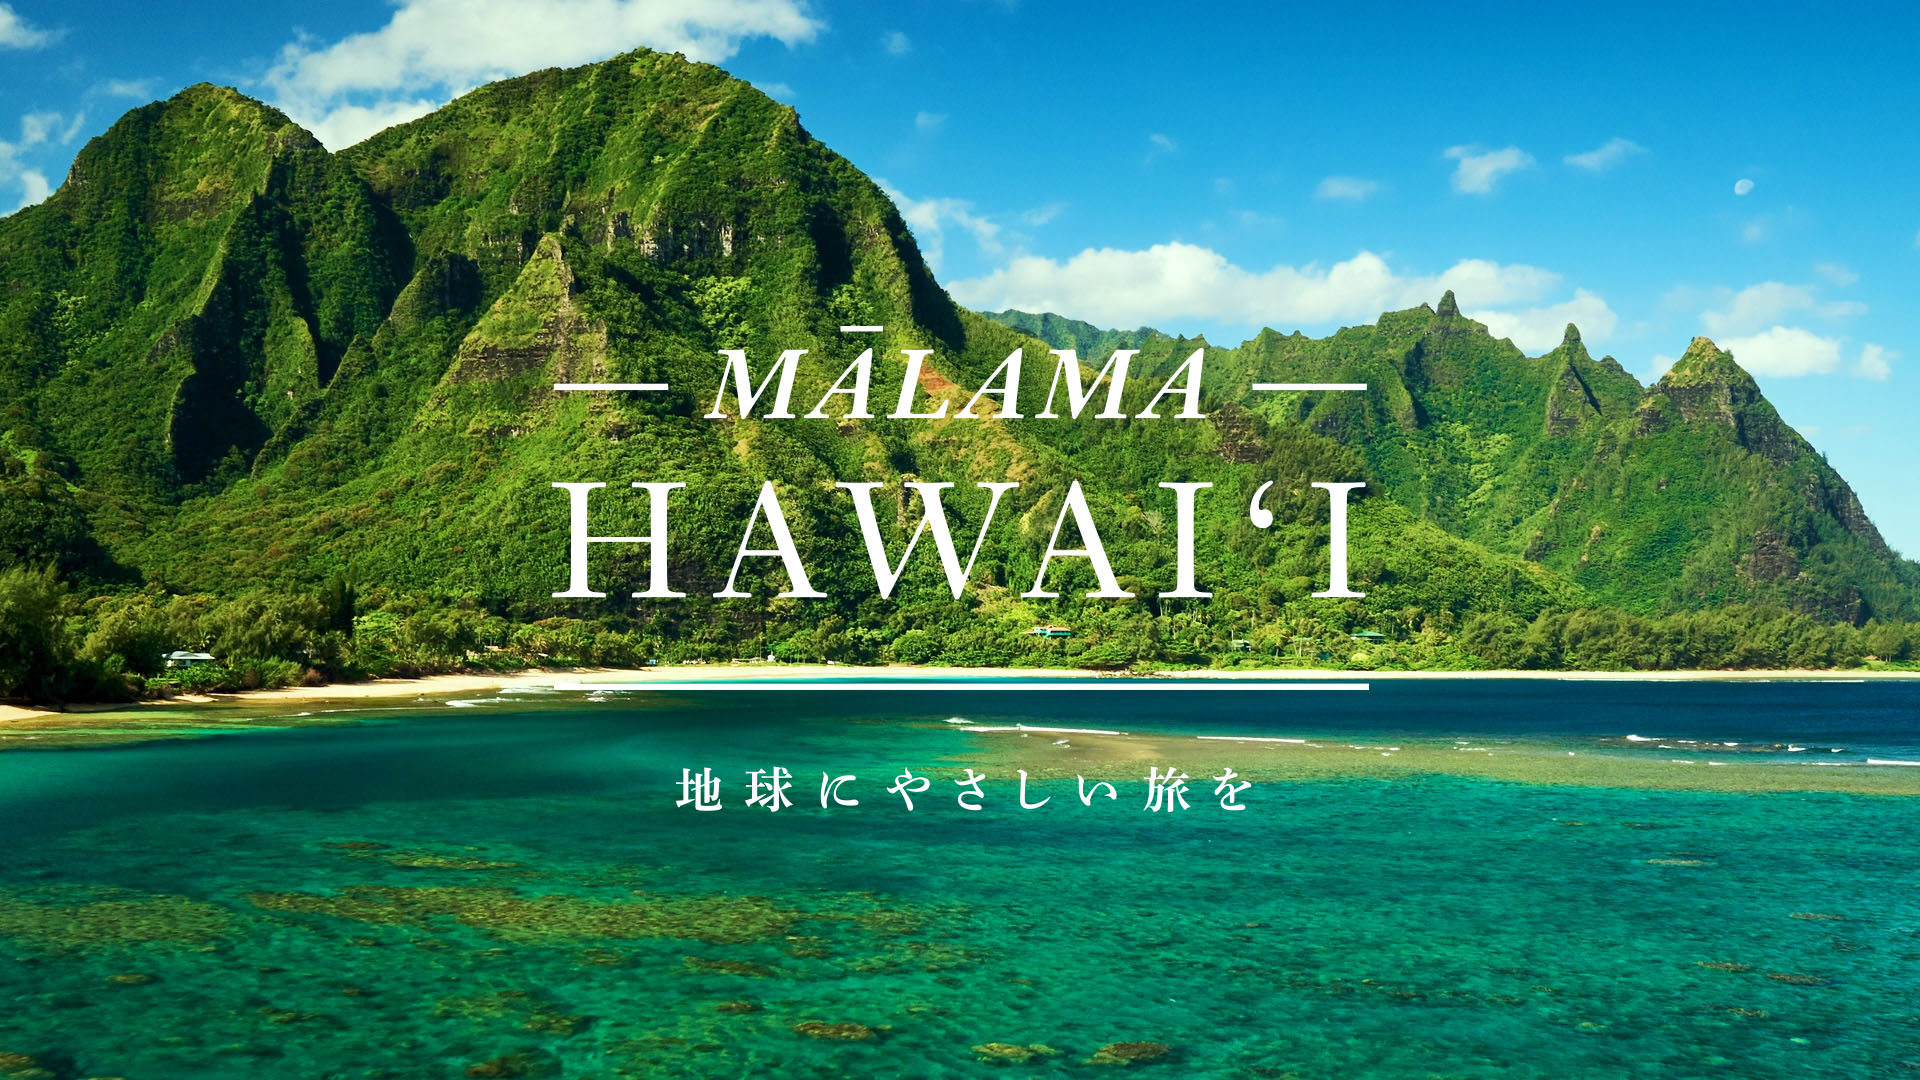 ハワイ州観光局、マラマハワイリツイートキャンペーン第2弾を実施 